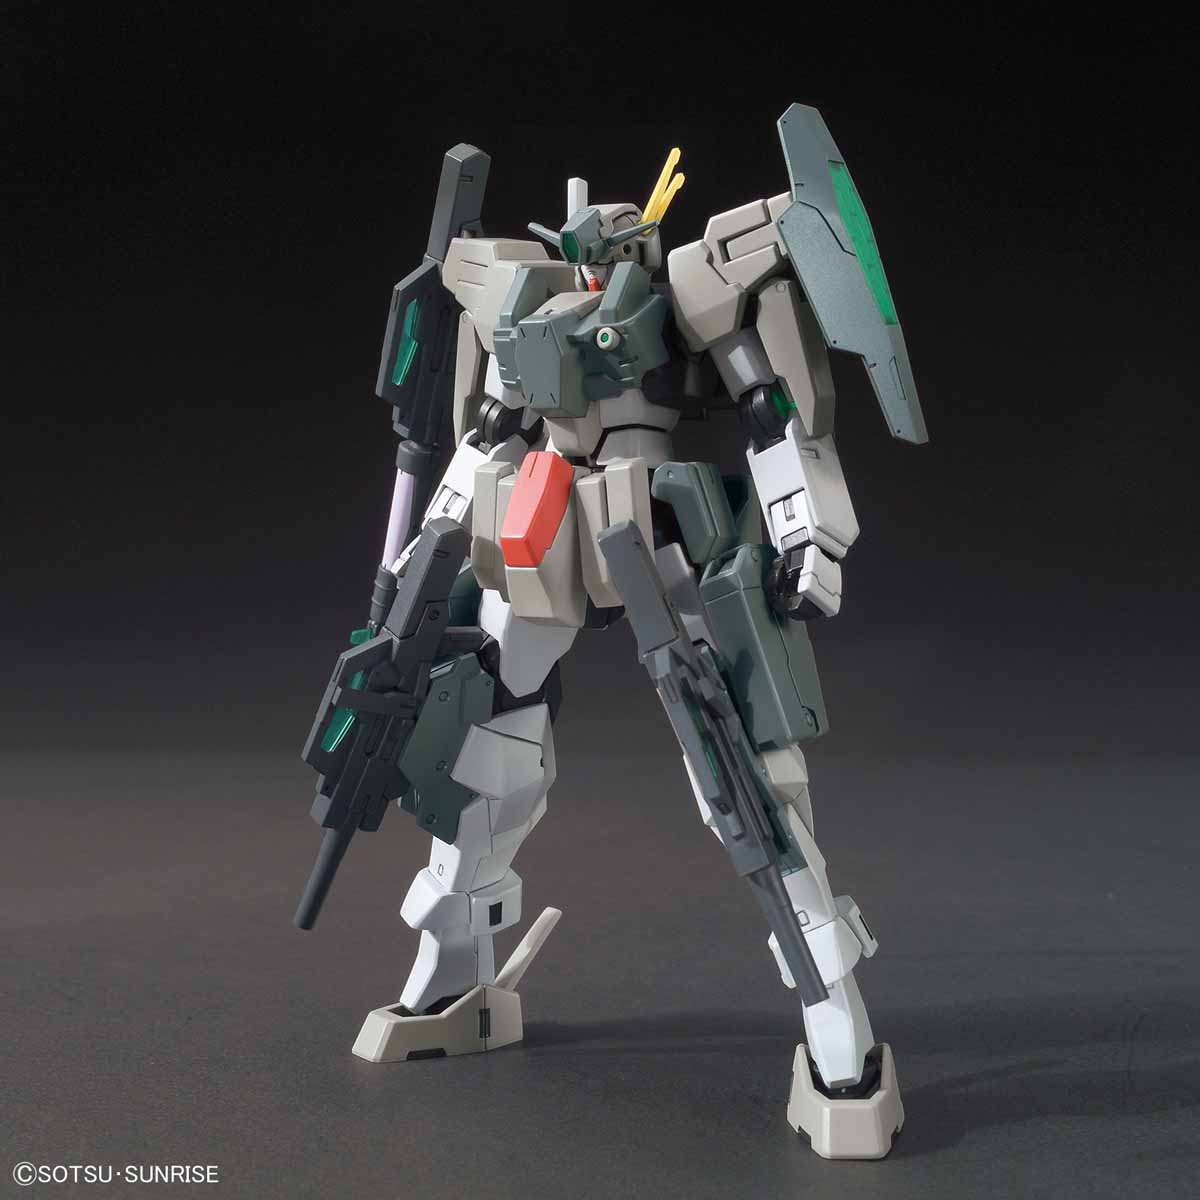 HGBF Cherdim Gundam Saga Type.GBF